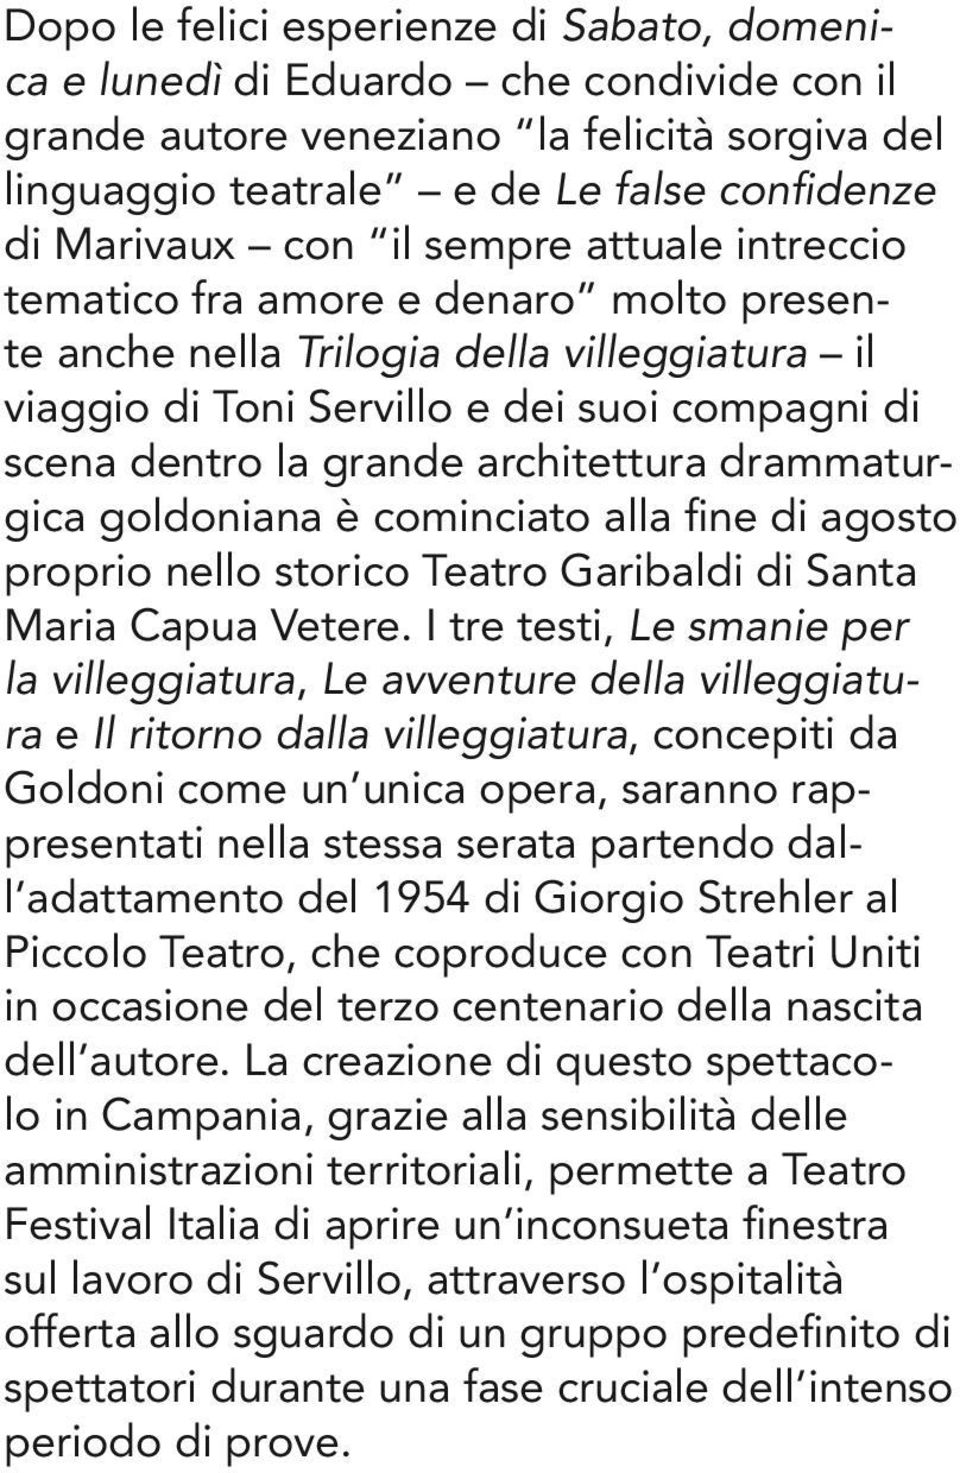 drammaturgica goldoniana è cominciato alla fine di agosto proprio nello storico Teatro Garibaldi di Santa Maria Capua Vetere.